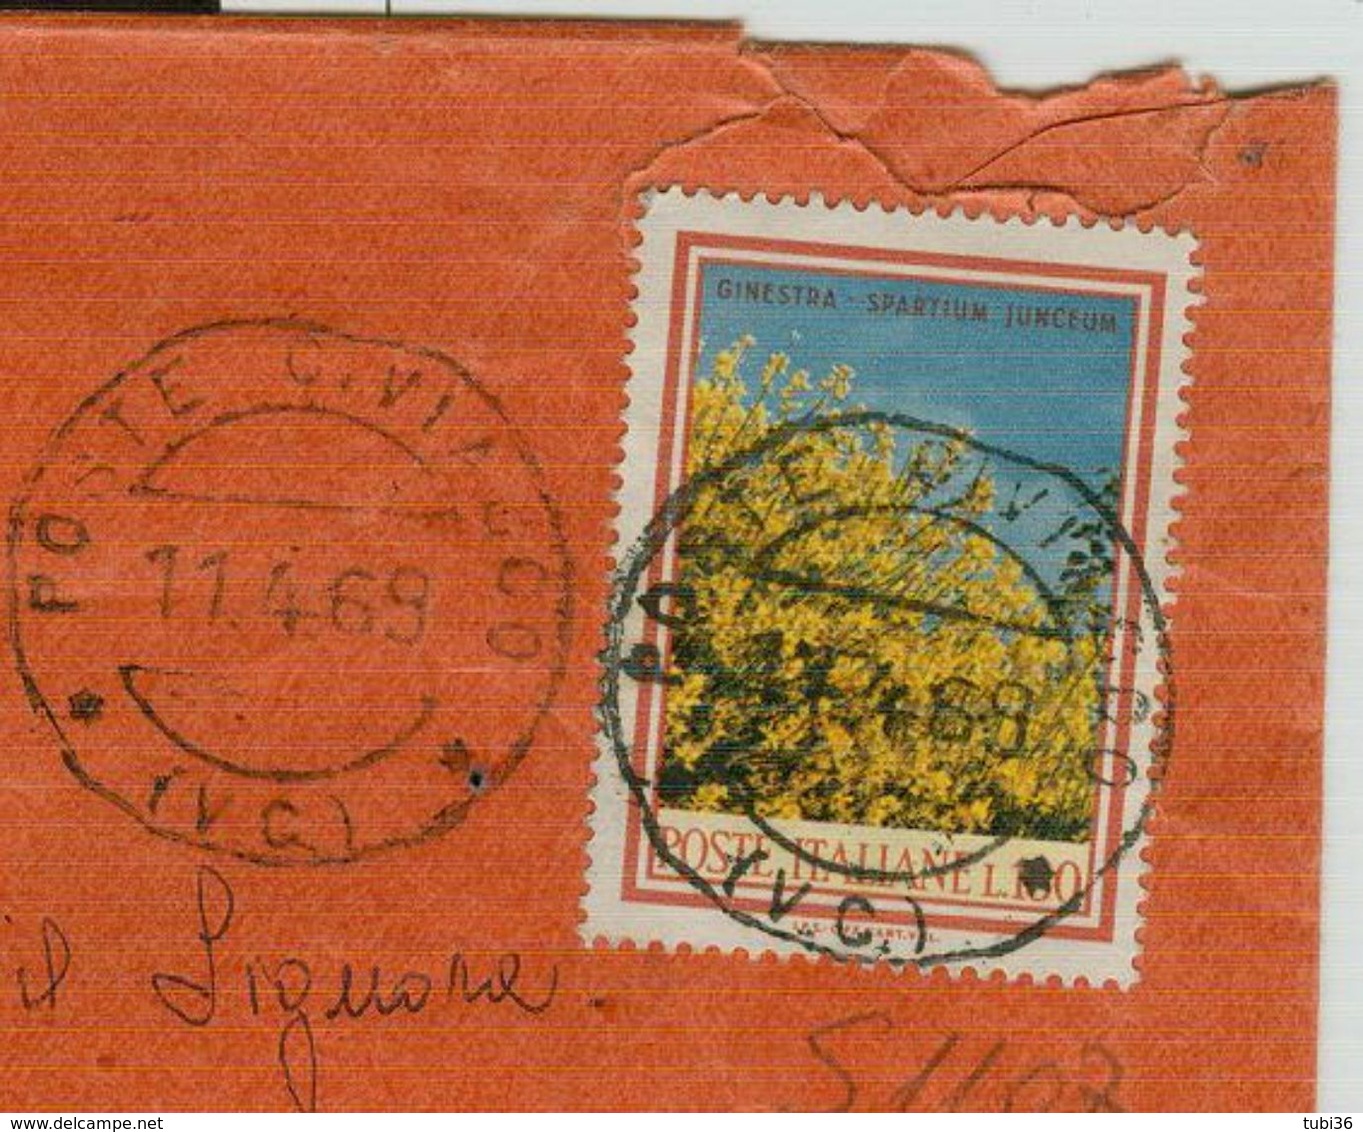 FLORA £.170 (S1107),ISOLATO TARIFFA LETTERA RACCOMANDATA,1969,TIMBRO POSTE CIVIASCO (VERCELLI), - 1961-70: Marcofilia